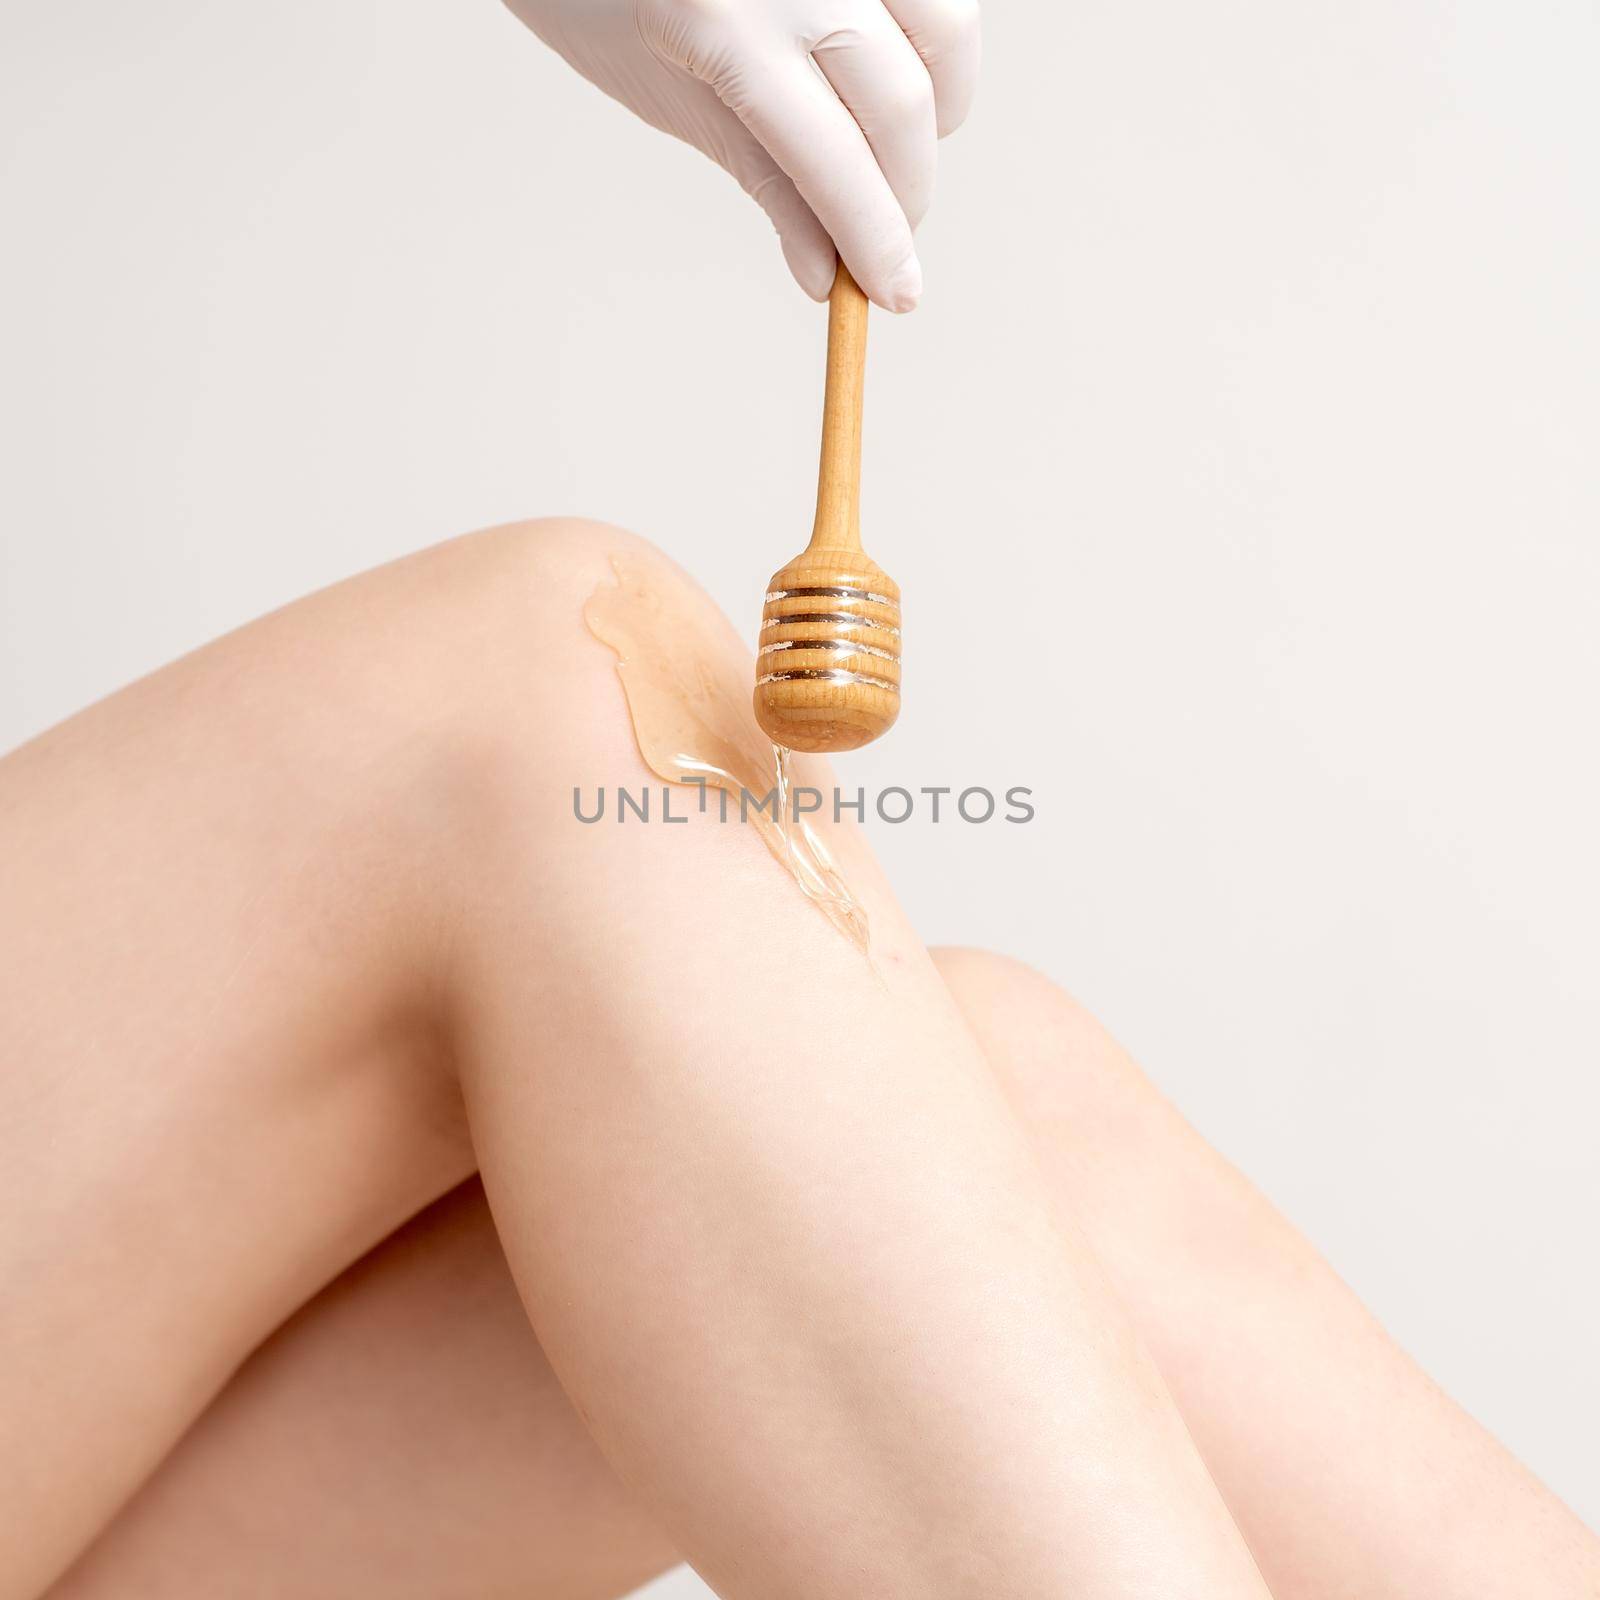 Wax flowing down on female leg by okskukuruza